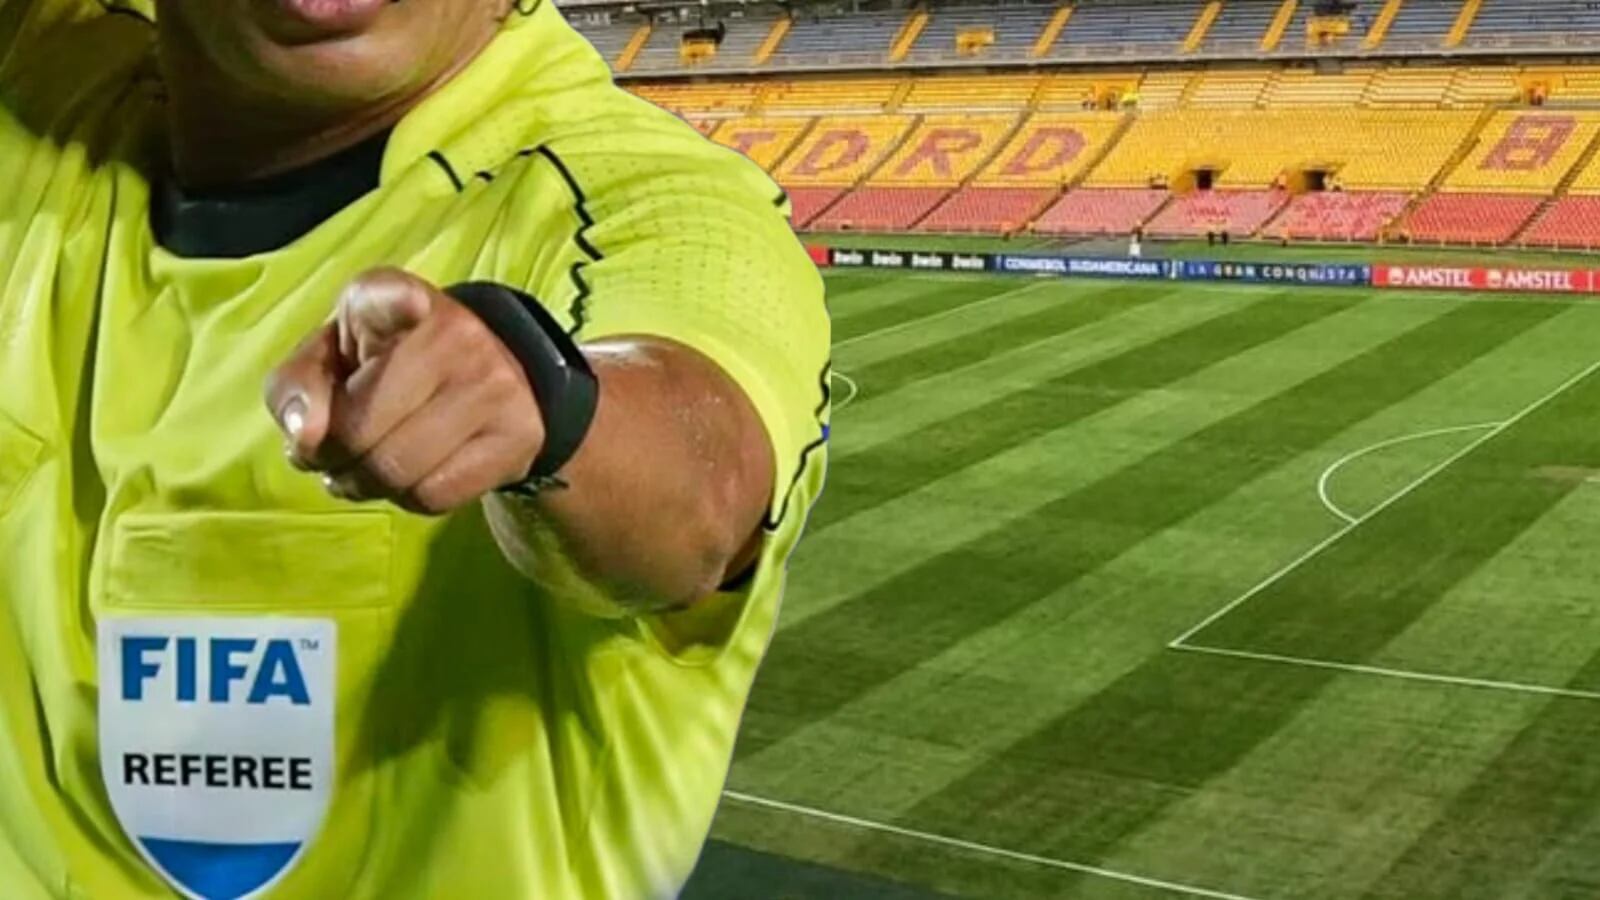 Por qué los árbitros se equivocan tanto en el campeonato de fútbol colombiano: expertos opinan sobre el tema